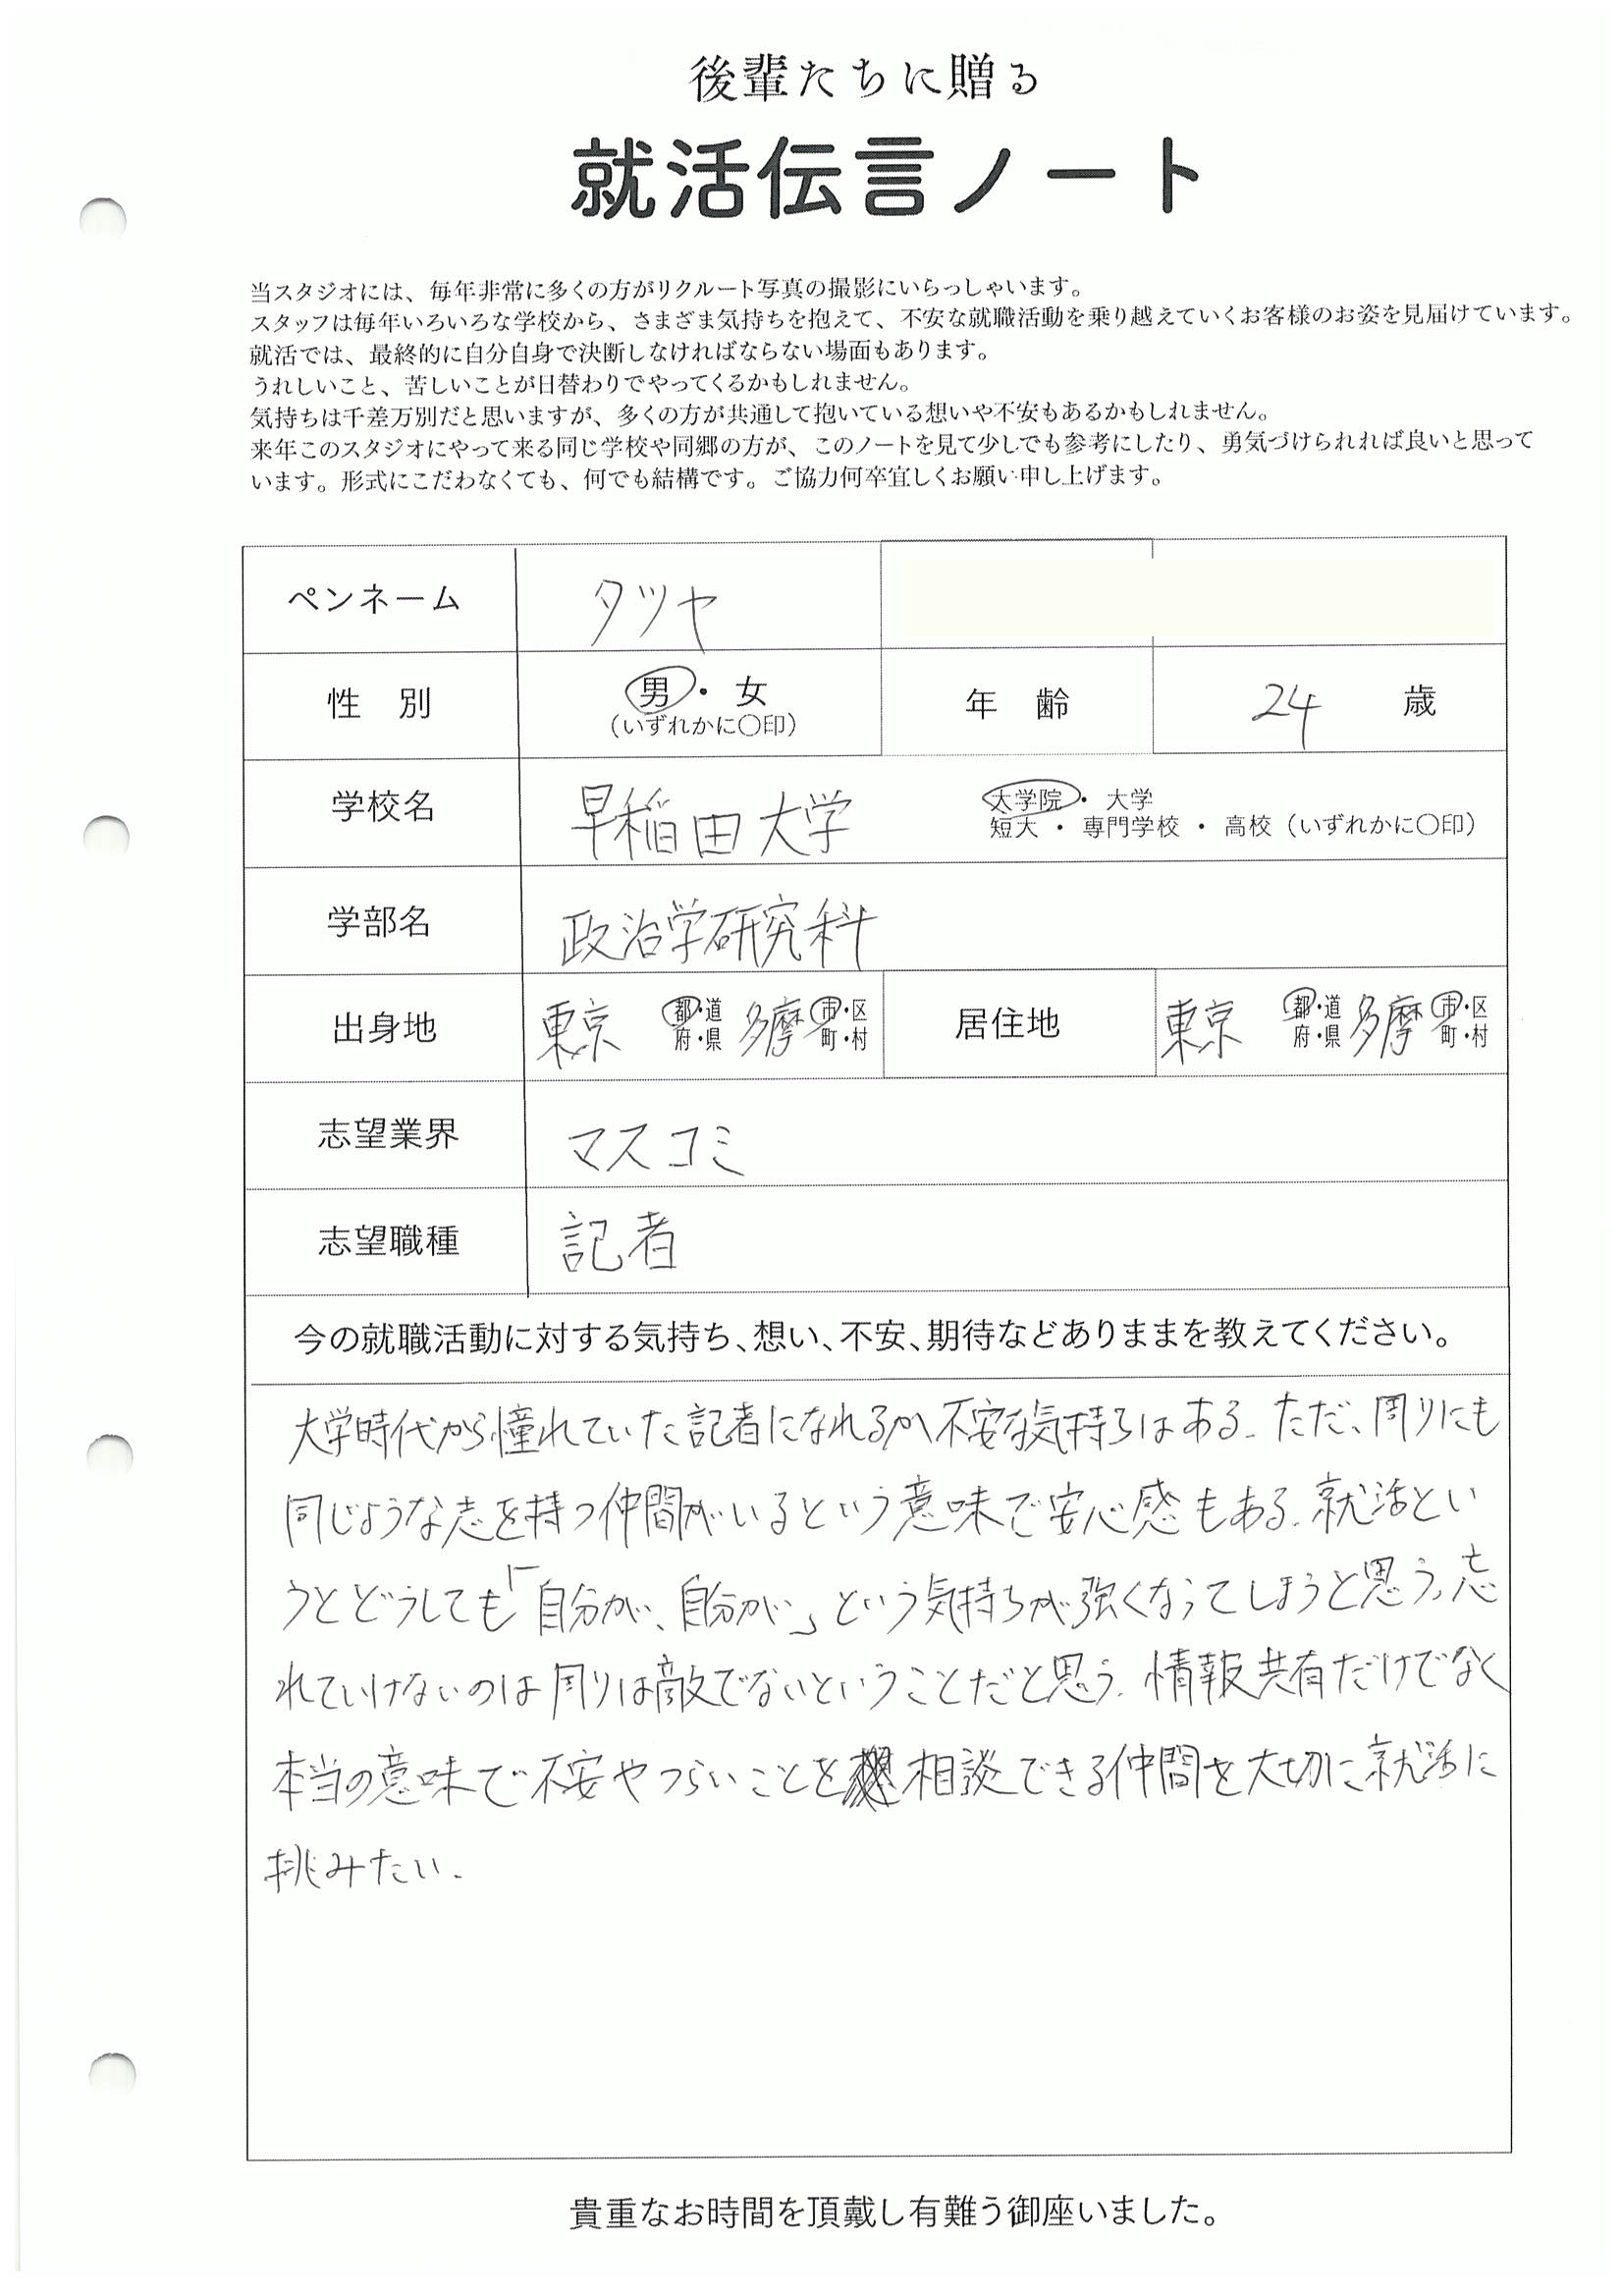 早稲田大学 大学院 政治学研究科 タツヤさんの直筆メッセージ リクルートフォトスタジオで就活証明写真を撮影